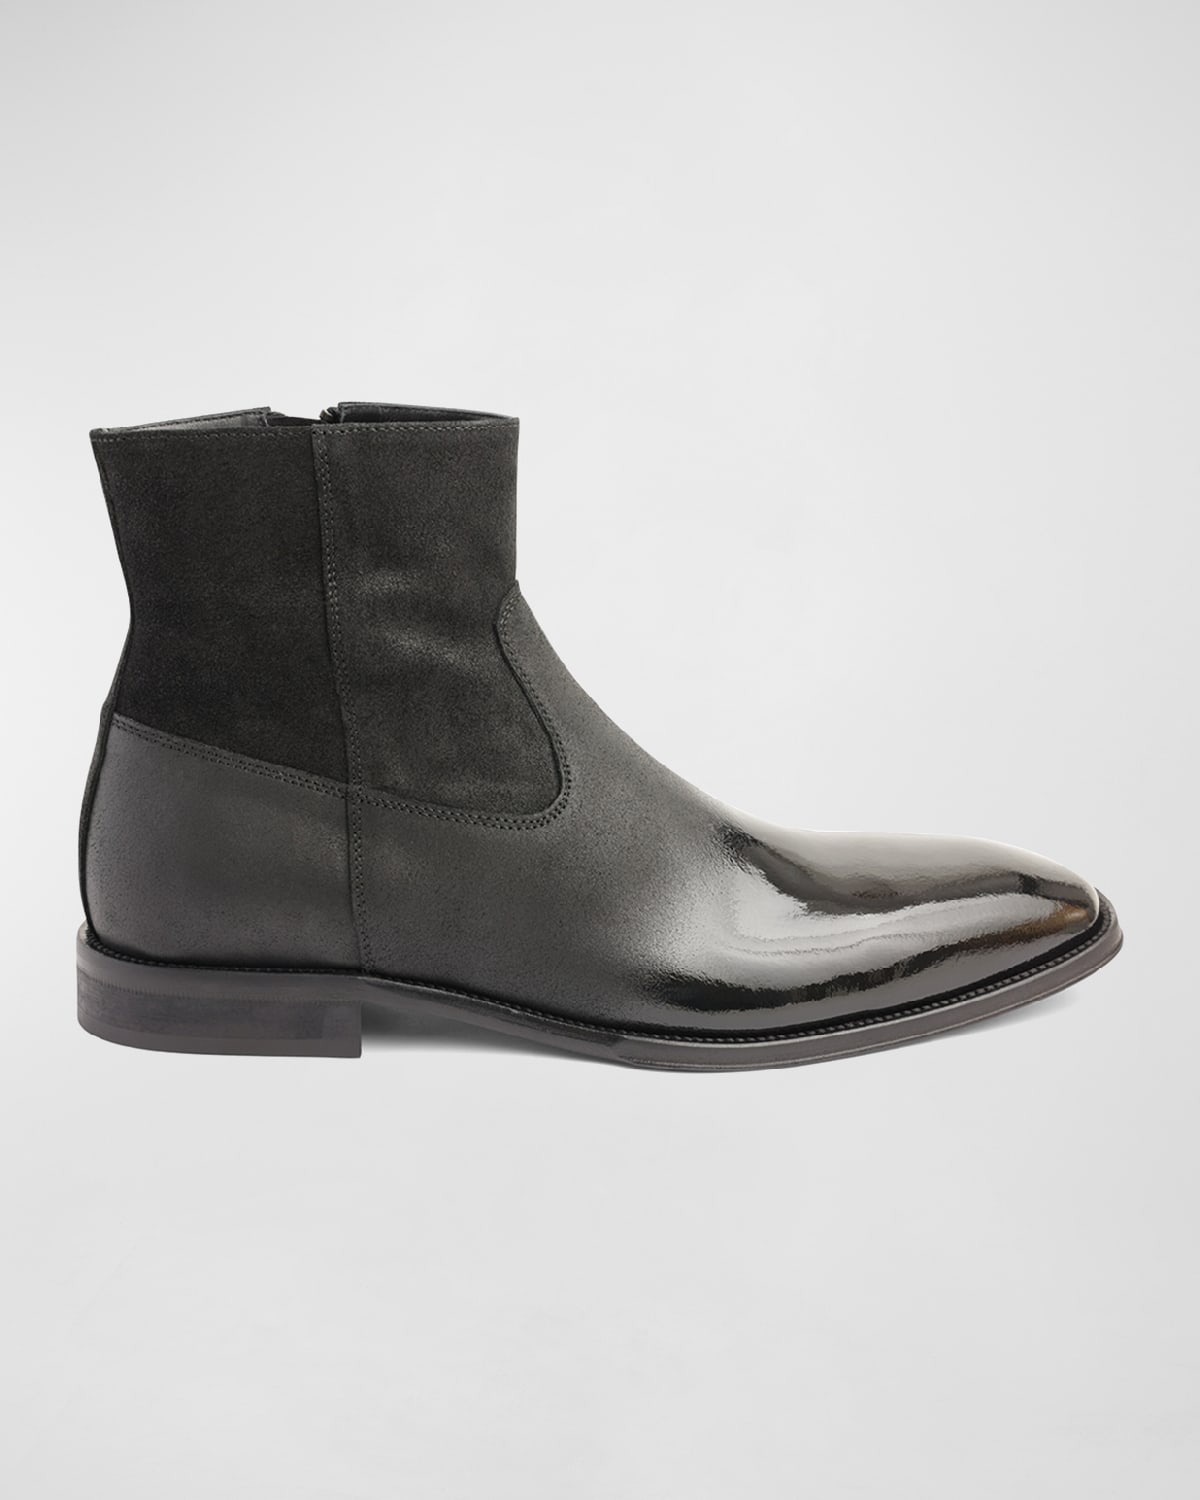 Men's Armando Ombré-Toe Leather Zip Booties